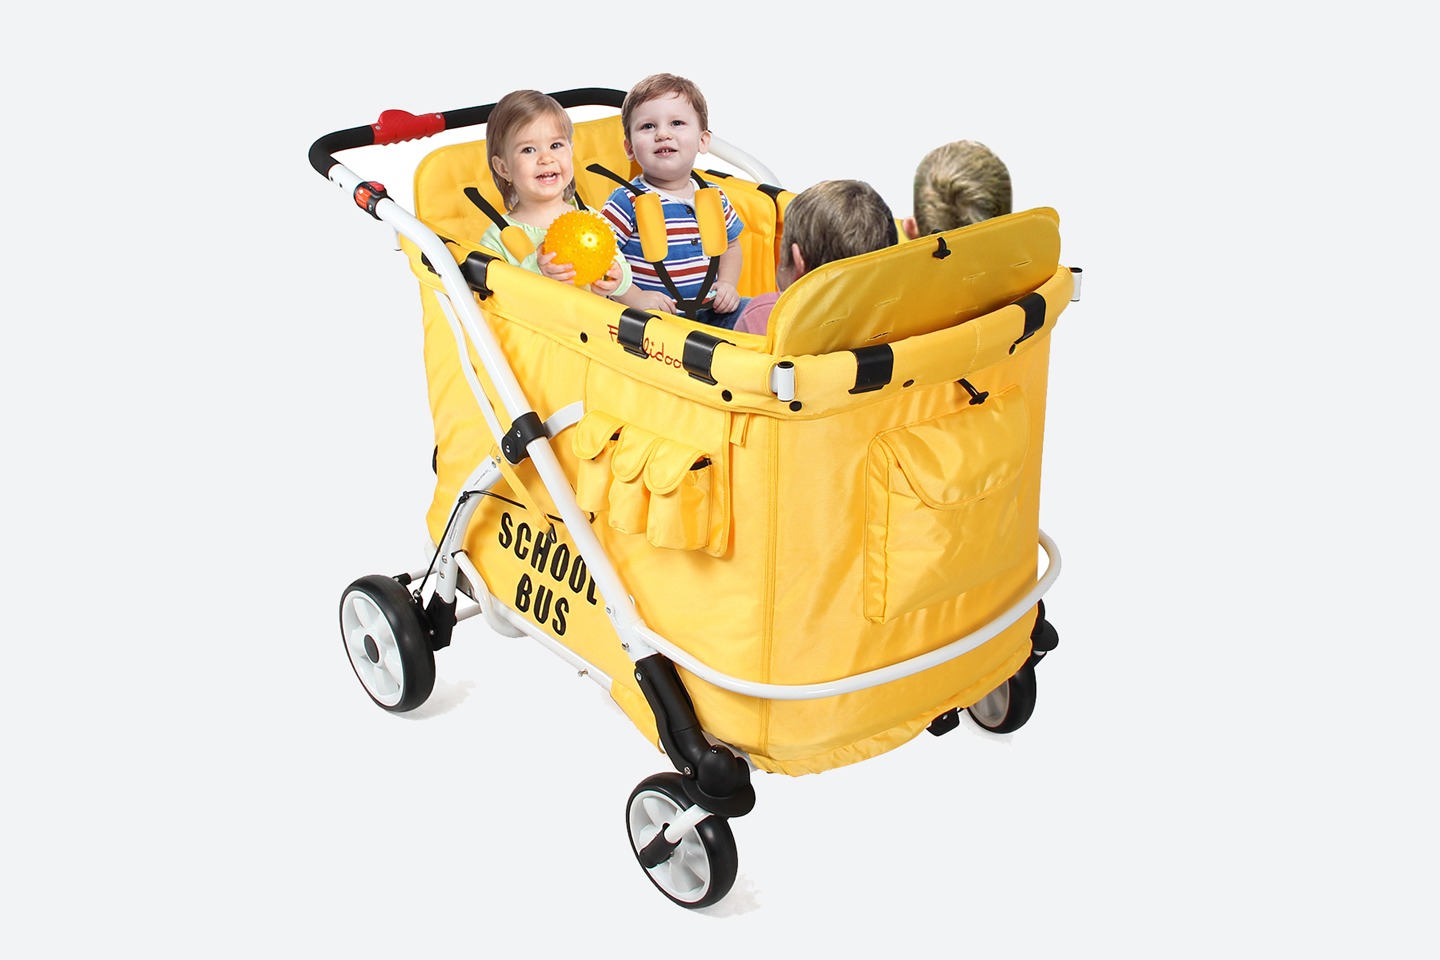 quad stroller for 4 children